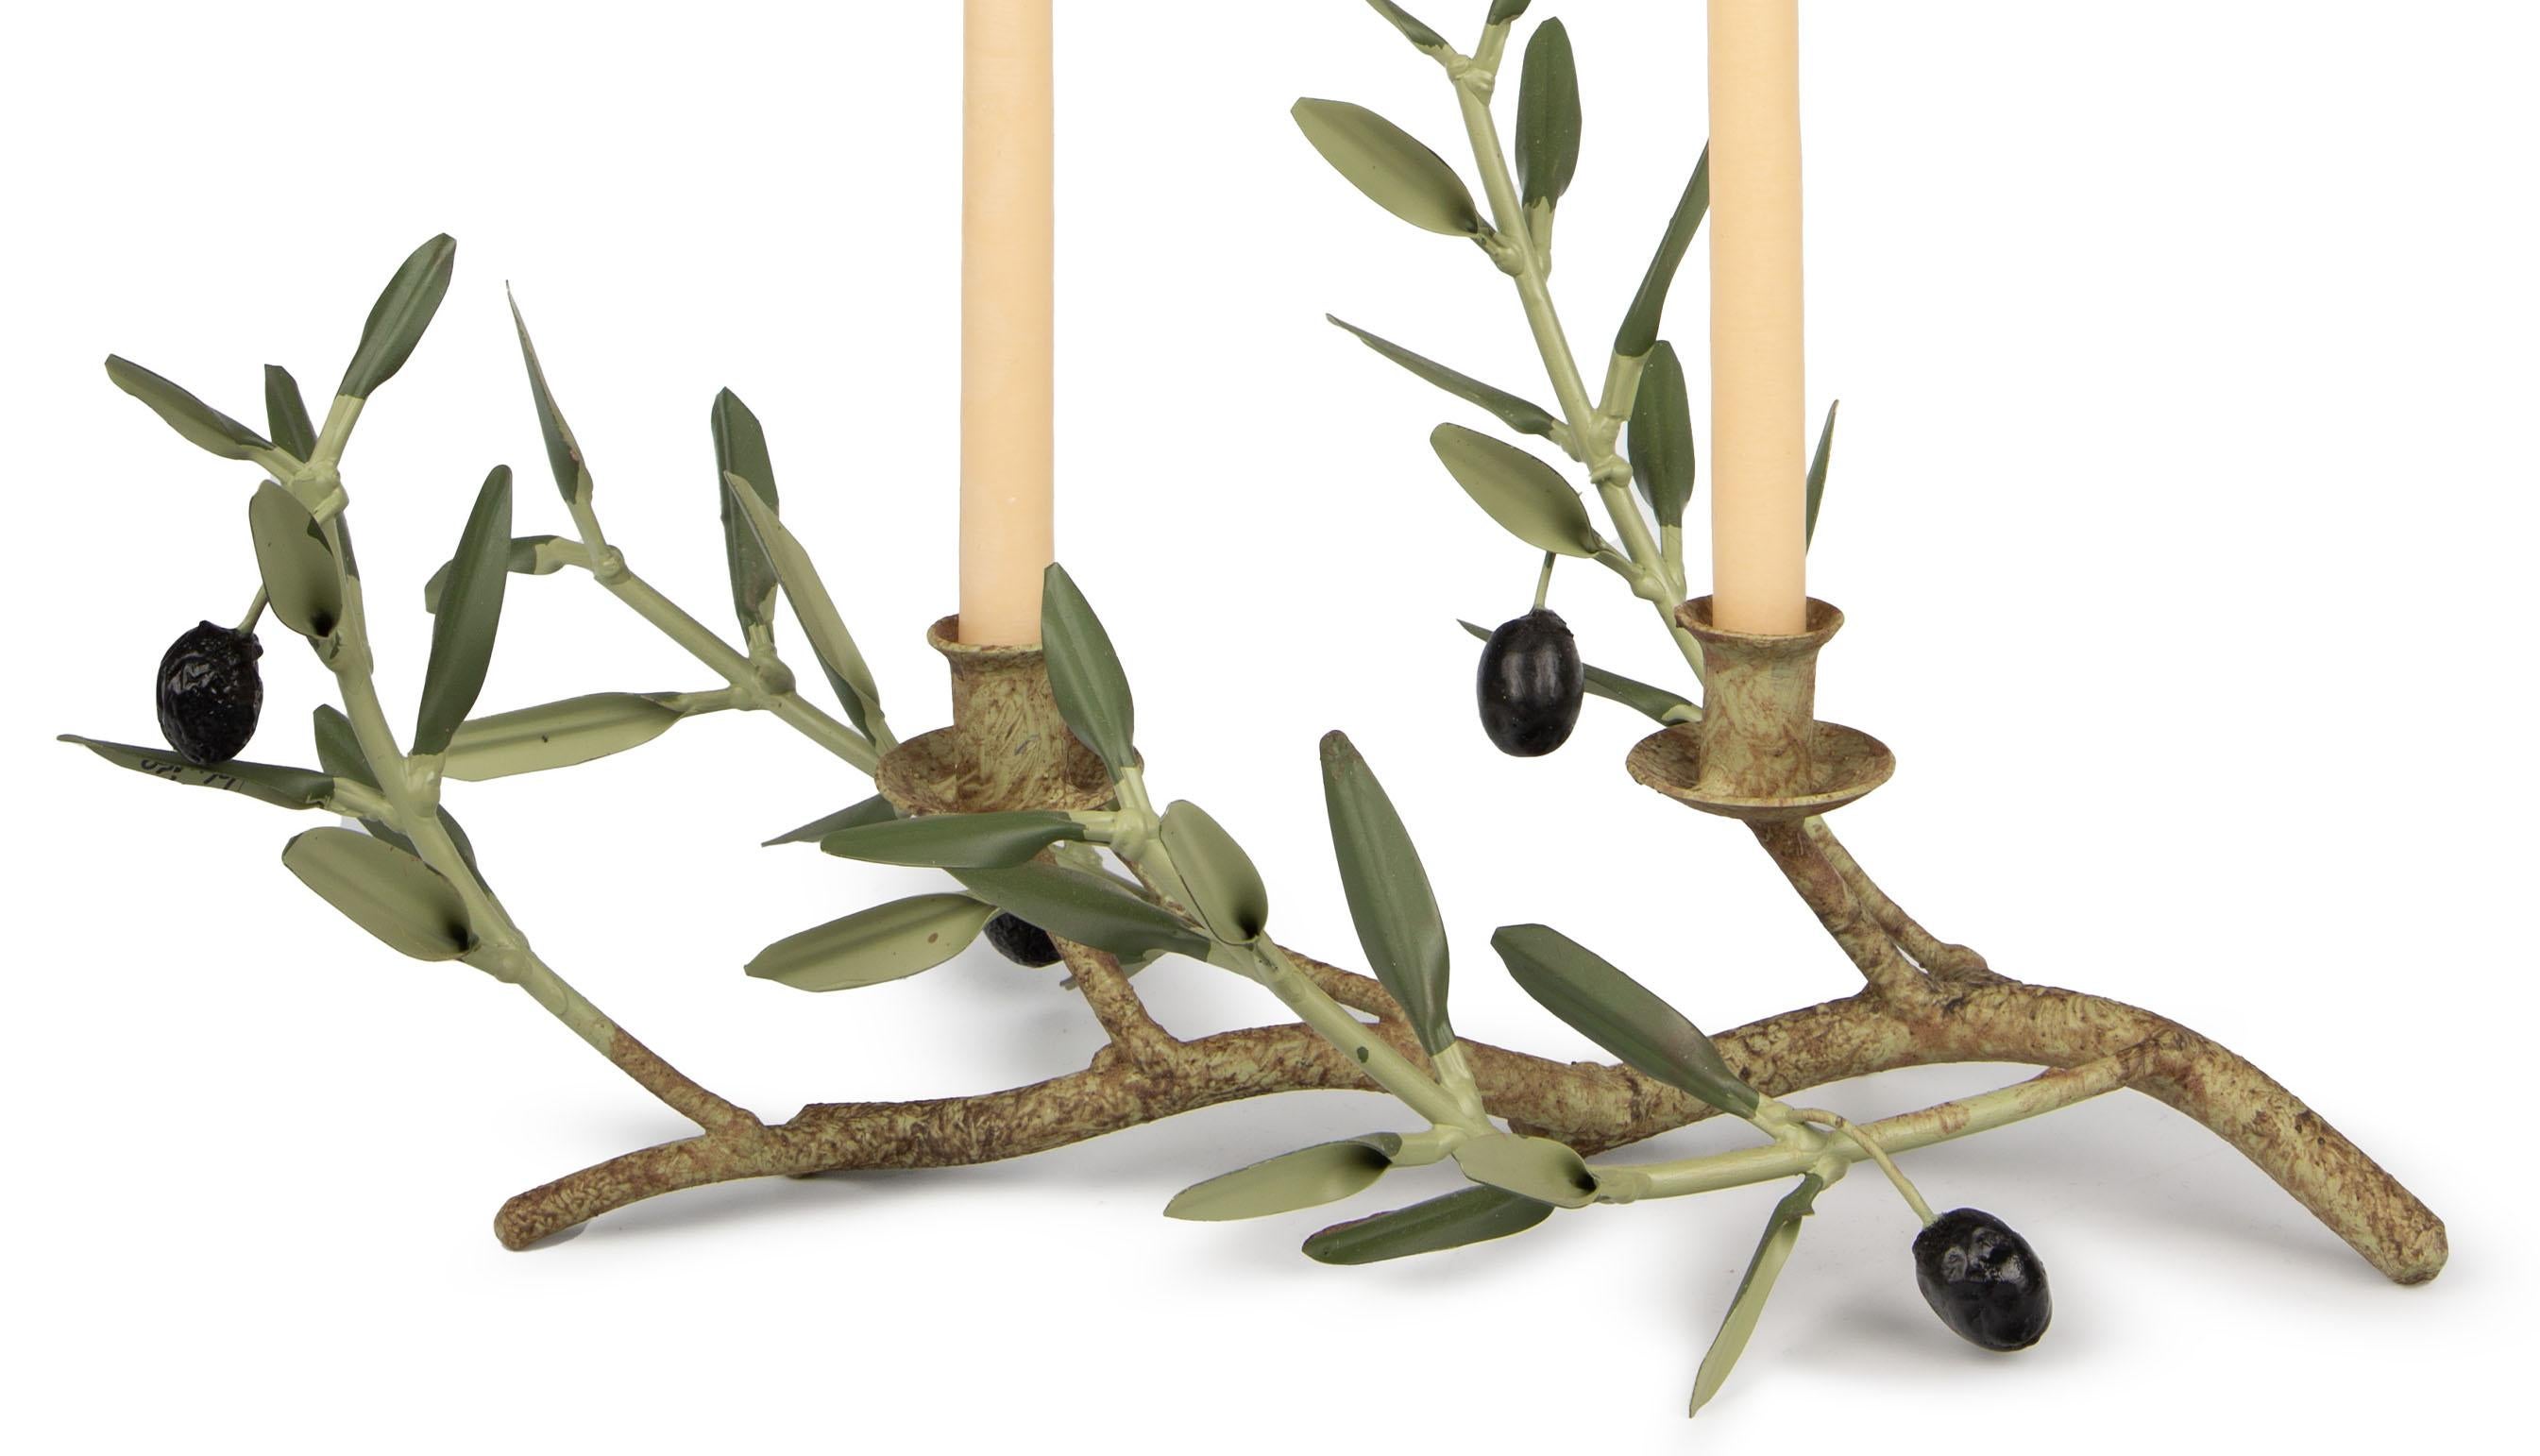 Fabriqué avec une attention méticuleuse aux détails, ce double bougeoir en forme de branche d'olivier témoigne de l'artisanat exquis de la Provence, en France. Chaque pièce, fabriquée à la main, incarne la beauté sereine de la Branch d'olivier,